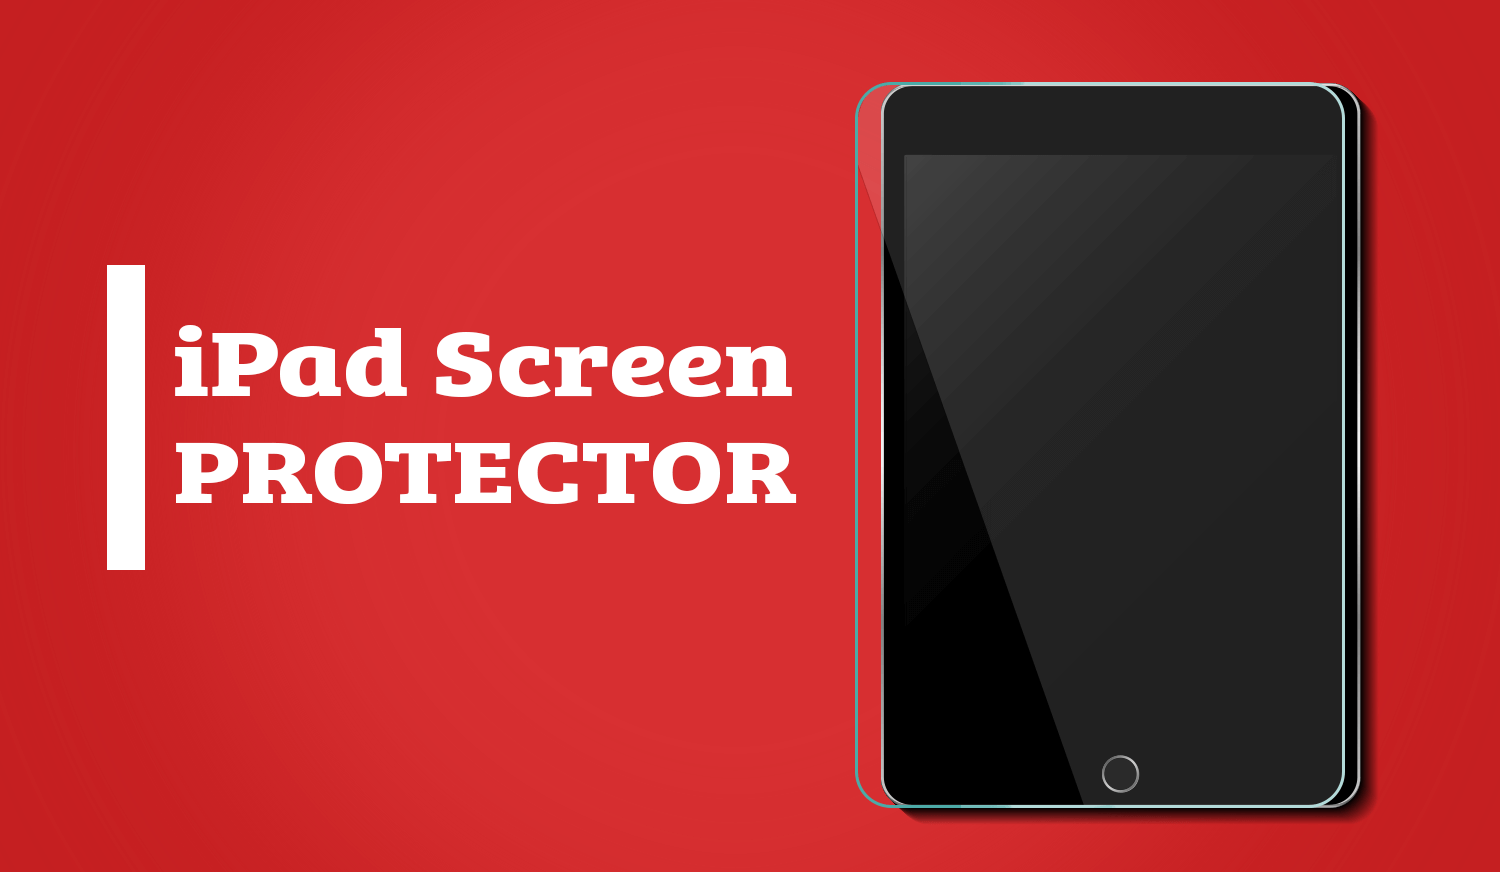 iPad screen protector